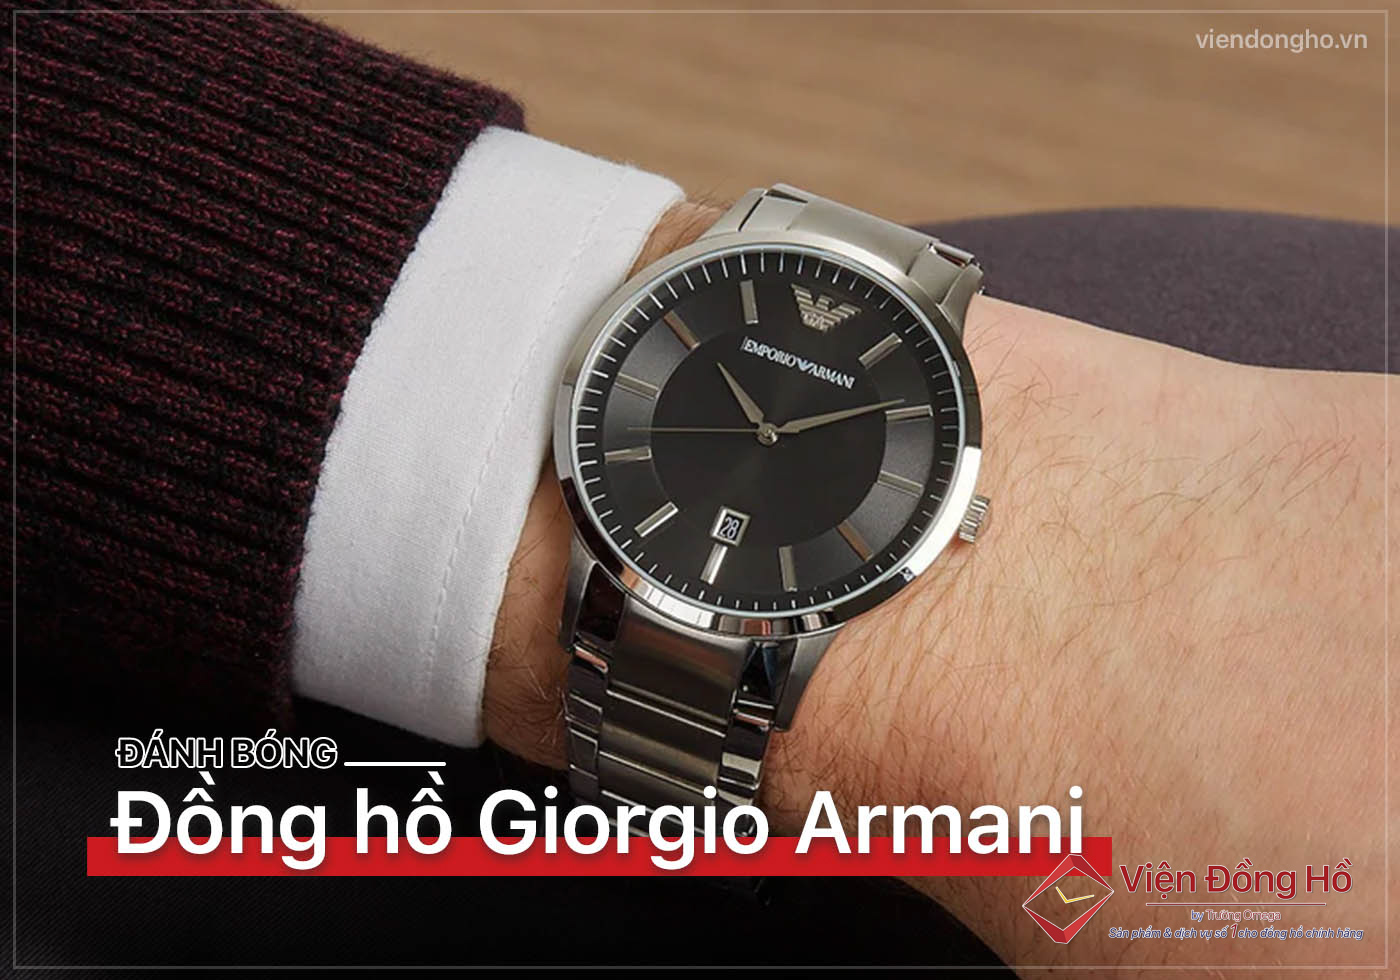 Danh bong dong ho Giorgio Armani 5